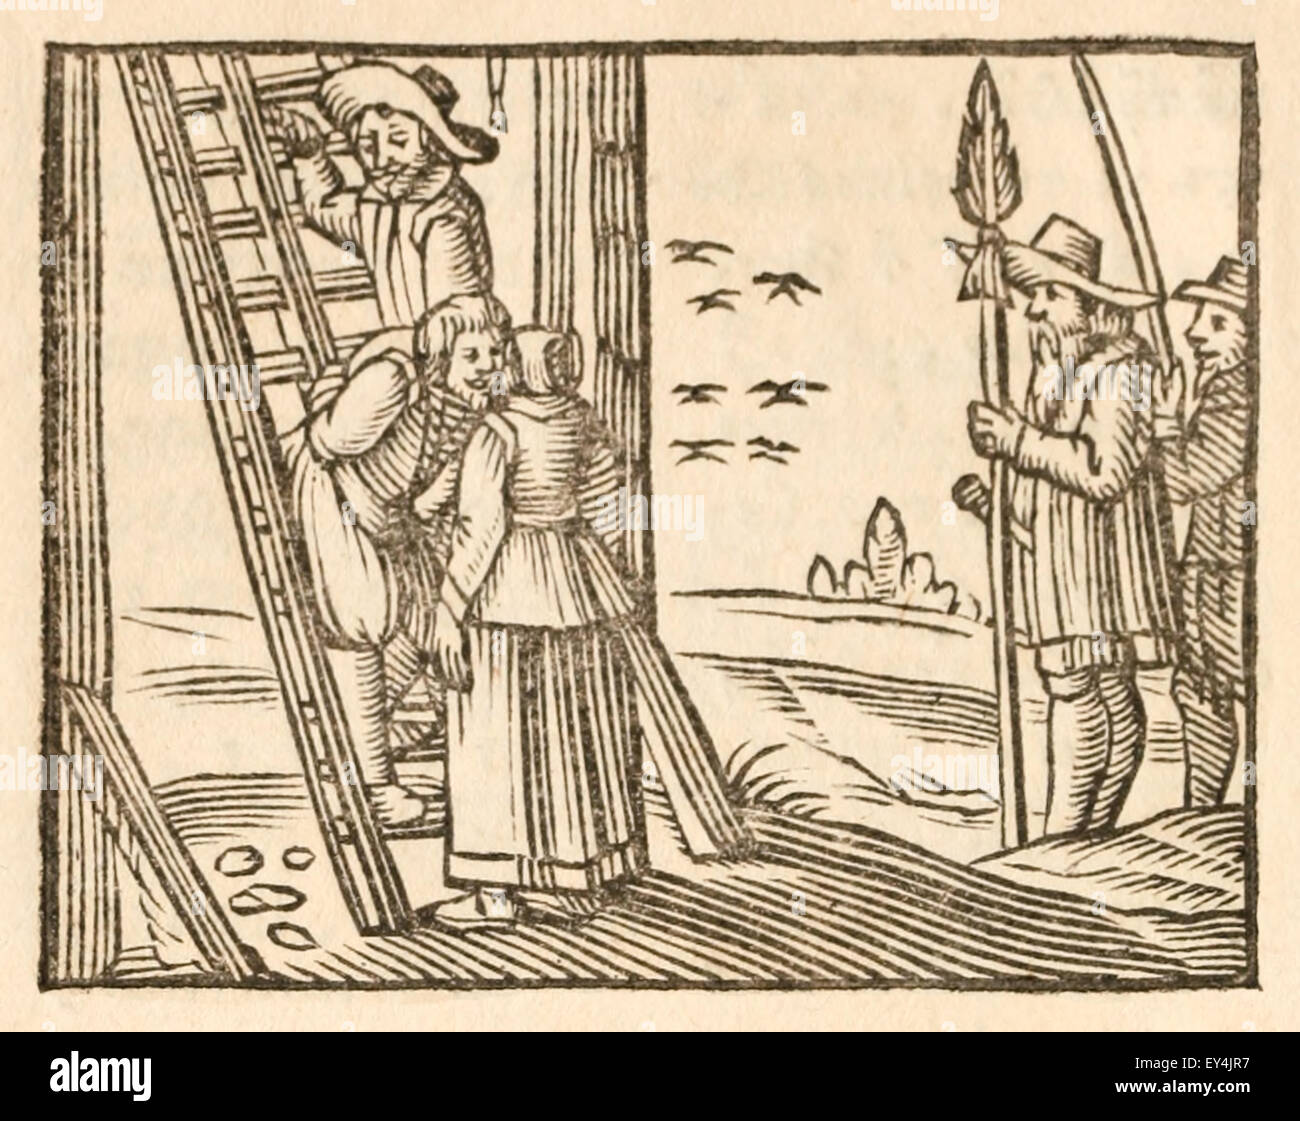 "Der Dieb und seine Mutter" Fabel von Aesop (ca. 600). 17. Jahrhundert Holzschnitt Drucken zur Veranschaulichung Aesop Fabeln. Siehe Beschreibung für mehr Informationen. Stockfoto